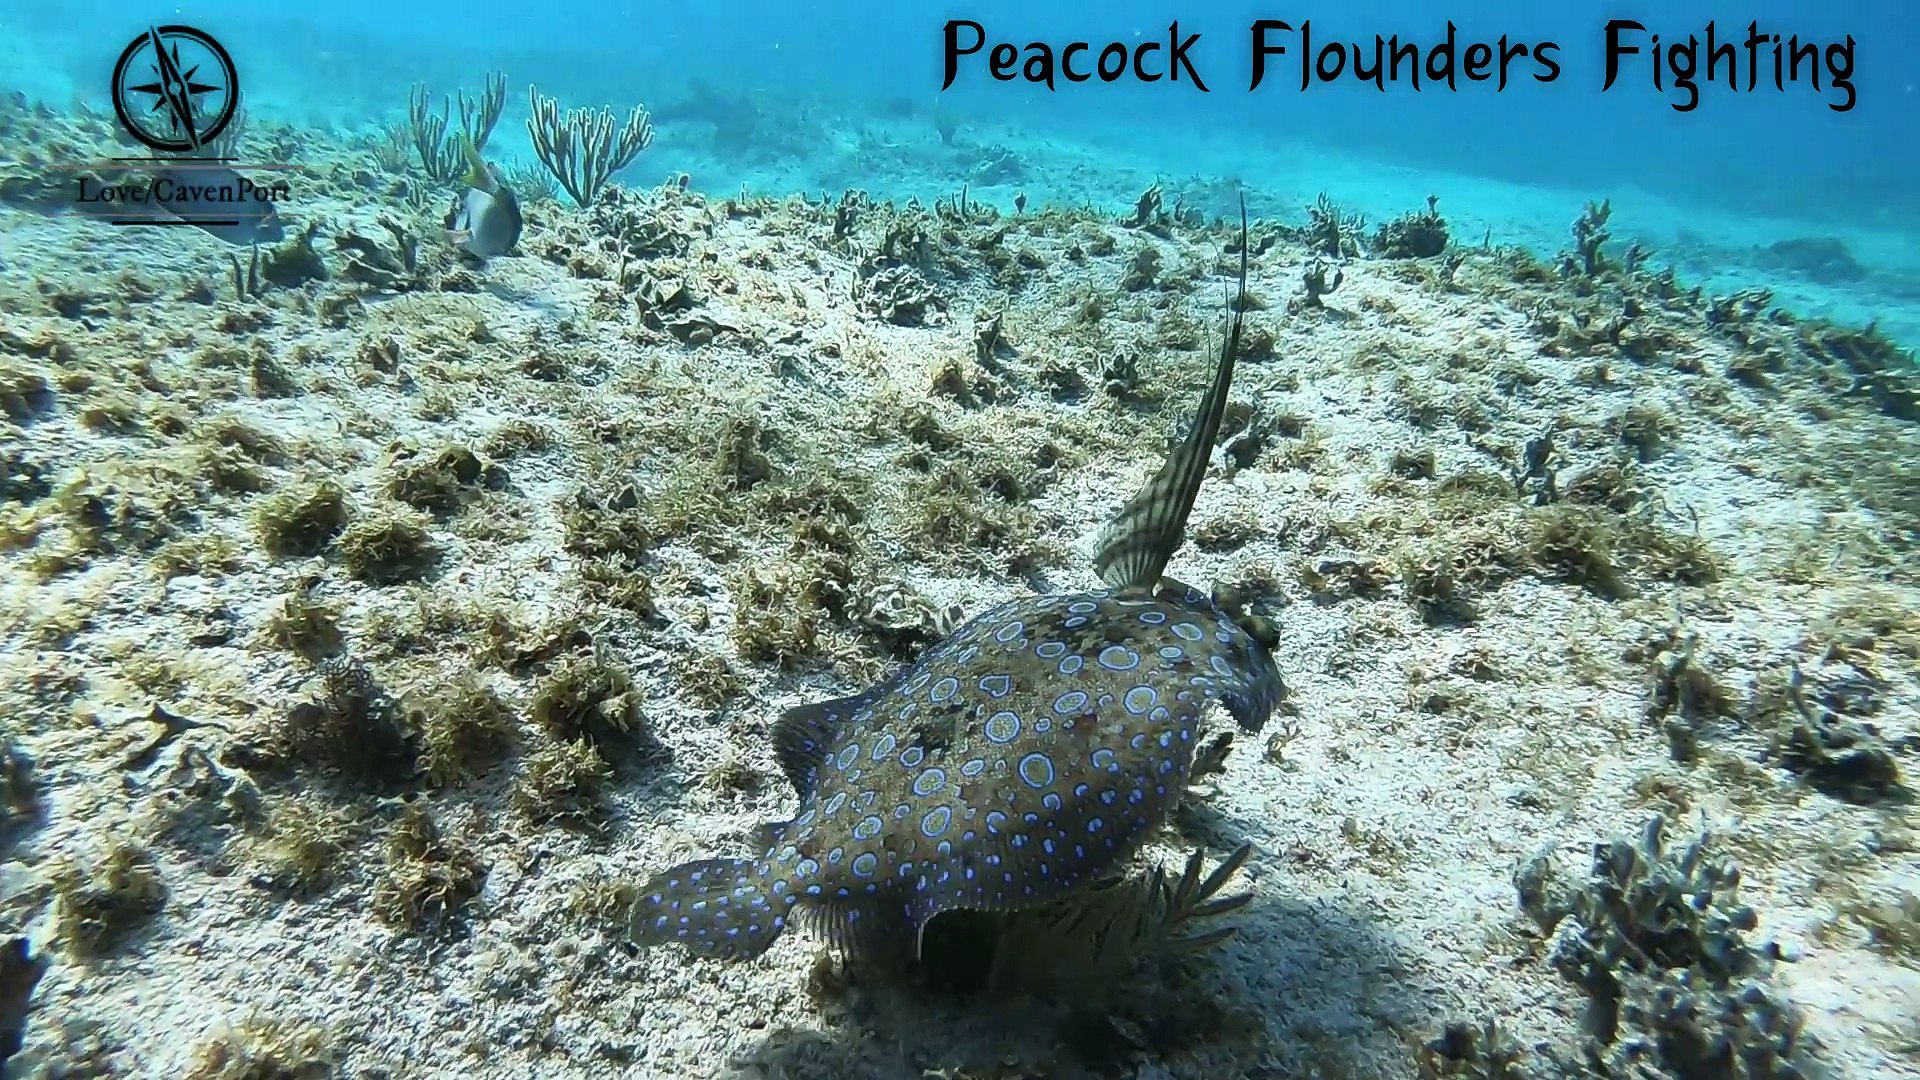 Peacock Flounders Fighting